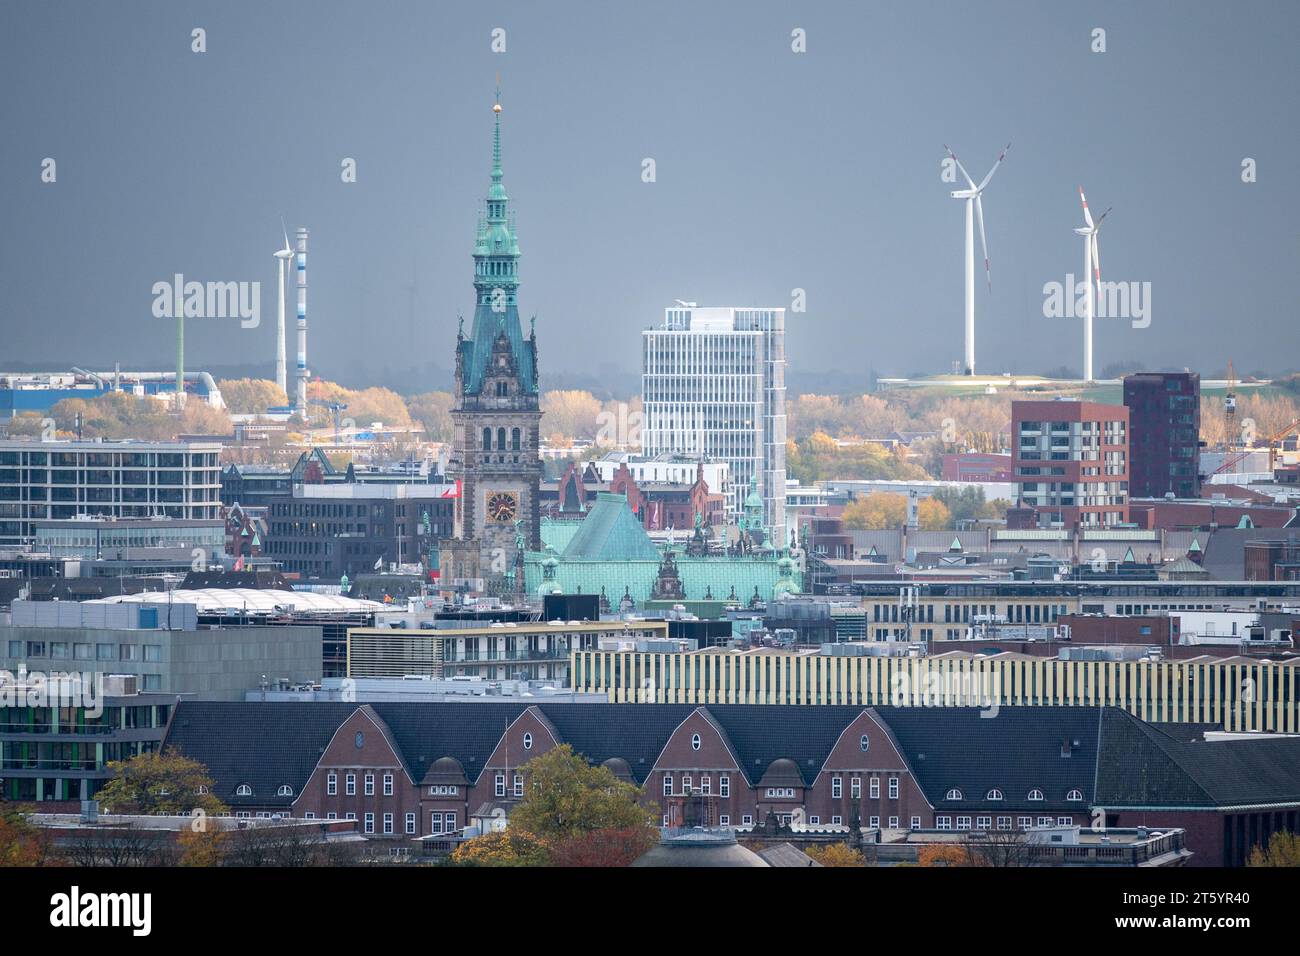 Énergie éolienne à Hmburg. La photo montre le centre-ville avec la mairie à Hambourg, en Allemagne. Éoliennes visibles en arrière-plan. Banque D'Images